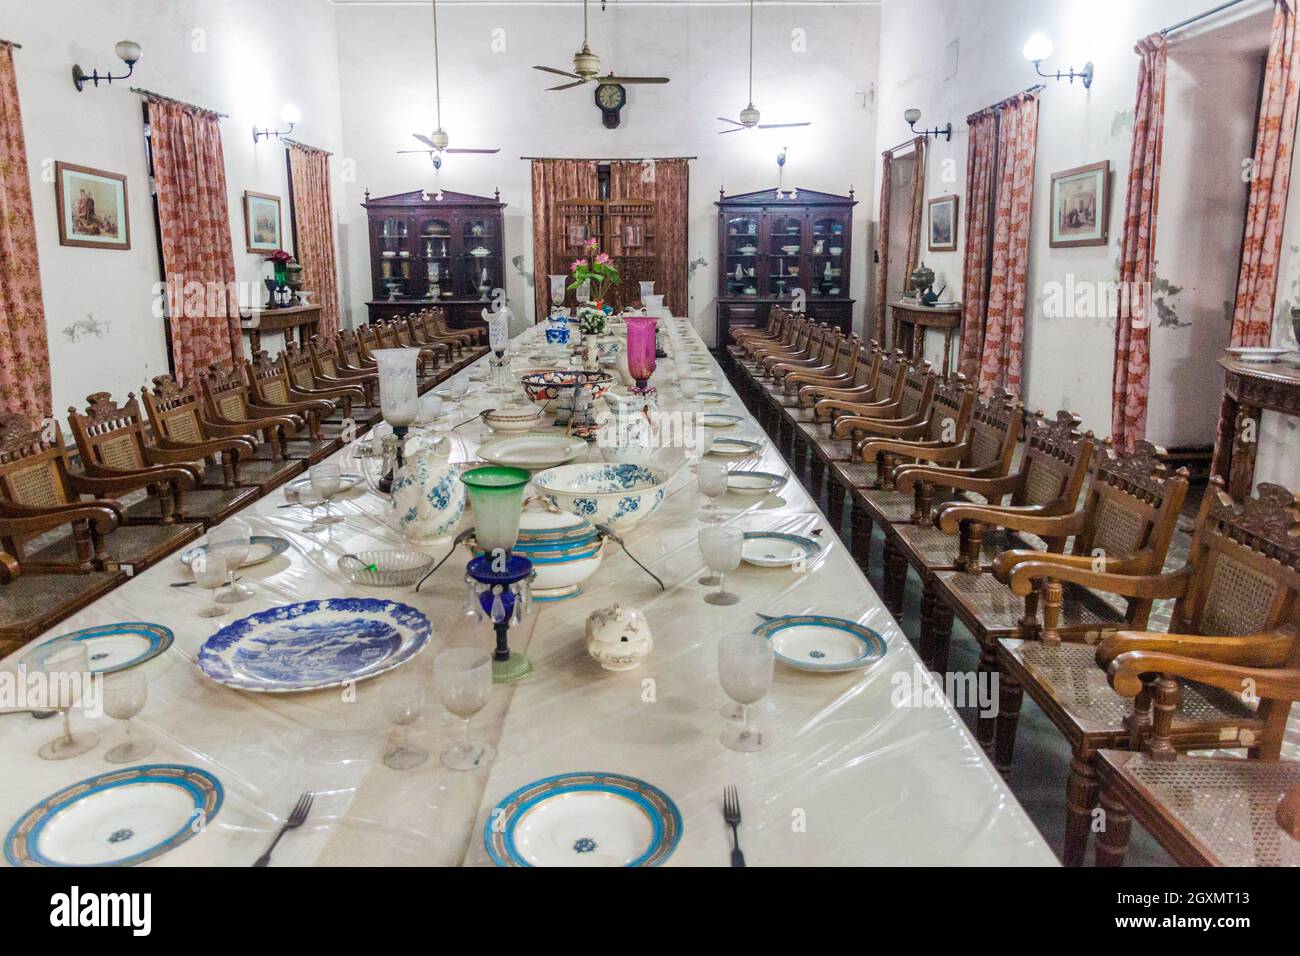 DHAKA, BANGLADESH - NOVEMBER 22, 2016: Interior of Ahsan Manzil, former residential palace of the Nawab of Dhaka, Bangladesh Stock Photo